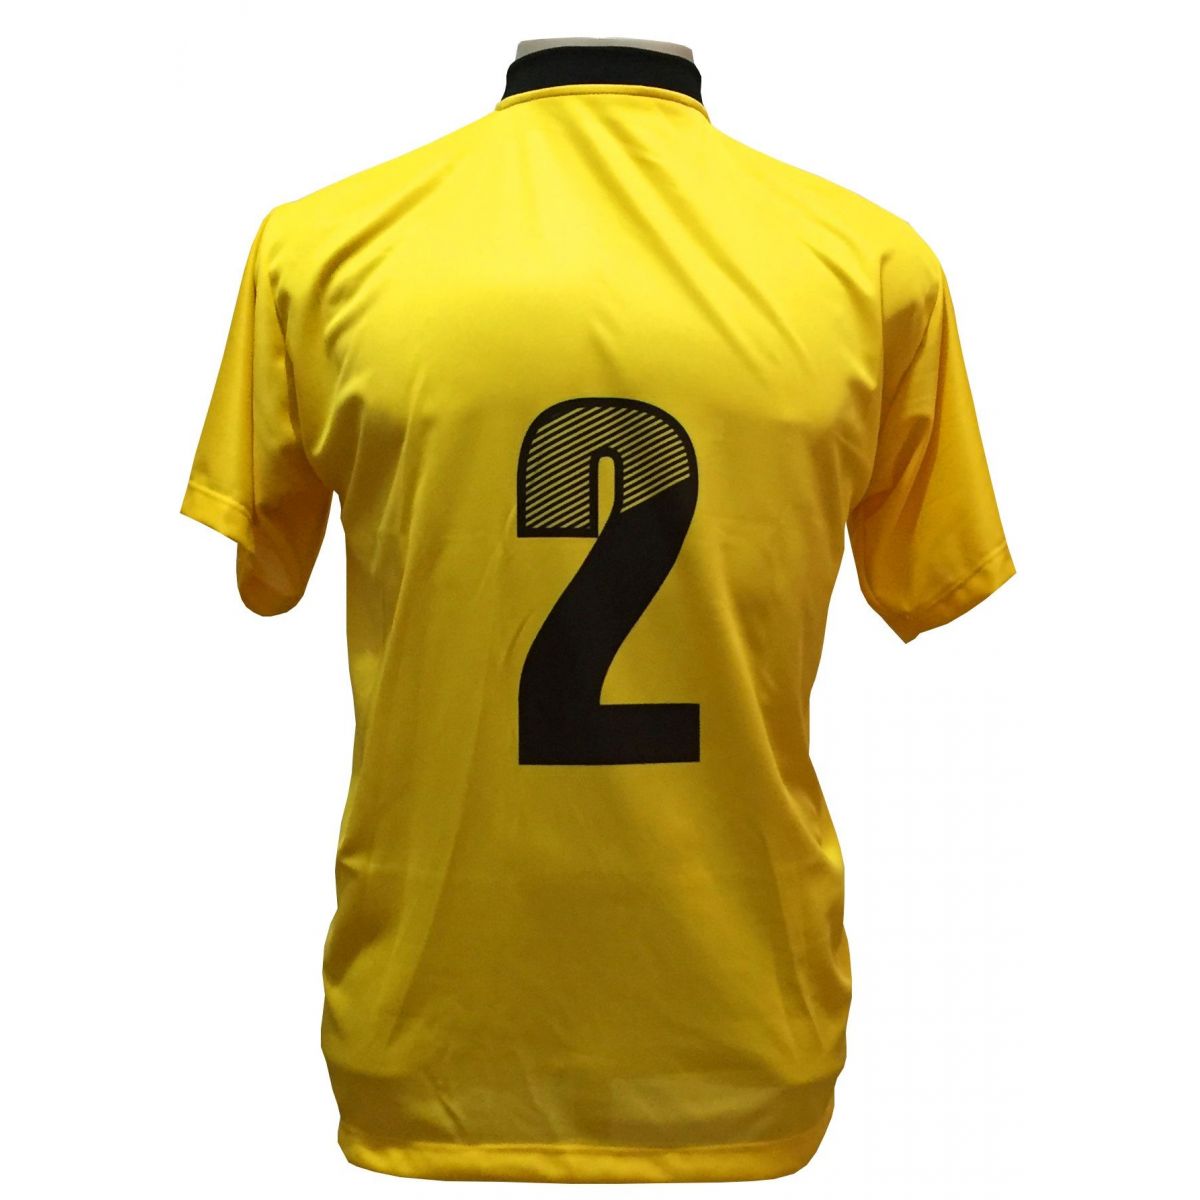 Fardamento Completo modelo Roma 20+1 (20 camisas Amarelo/Preto + 20 calções modelo Copa Preto/Amarelo + 20 pares de meiões Preto + 1 conjunto de goleiro) + Brindes